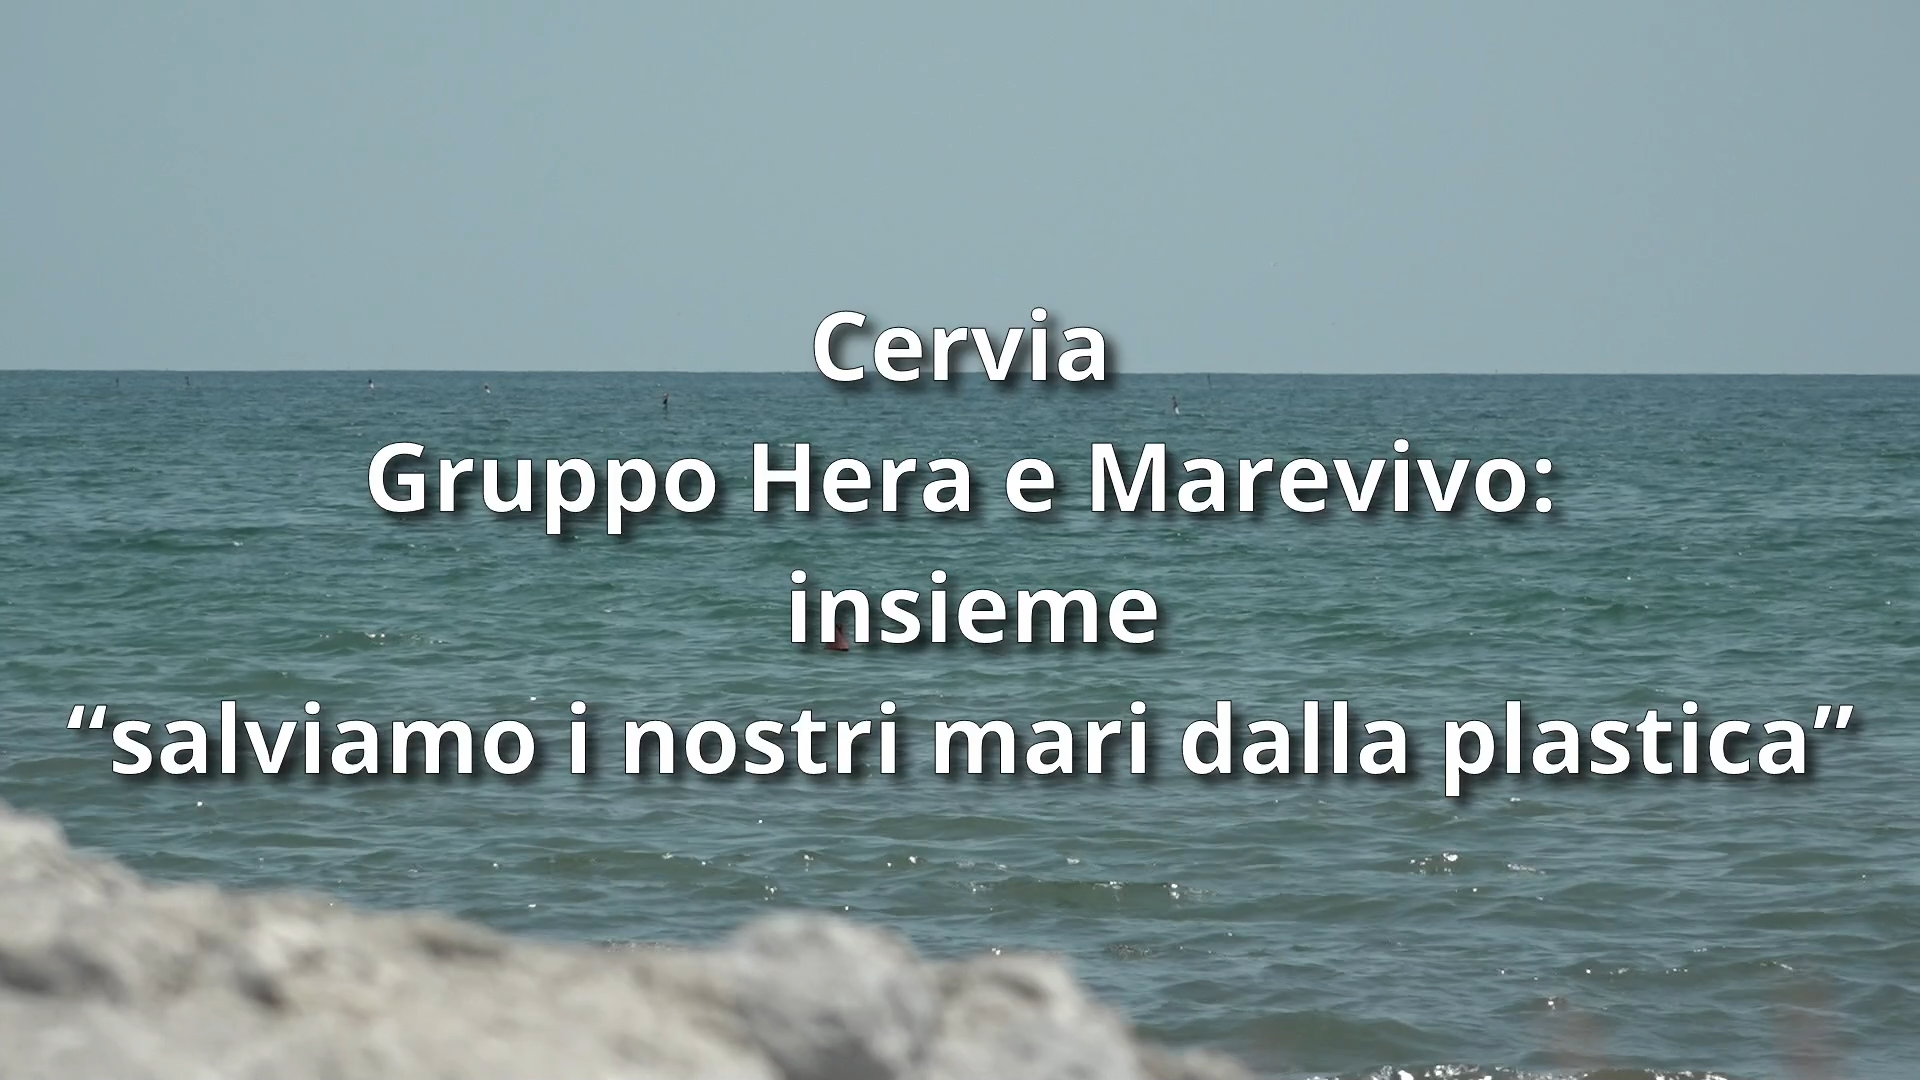 Gruppo Hera e Marevivo: Insieme “salviamo i nostri mari dalla plastica”